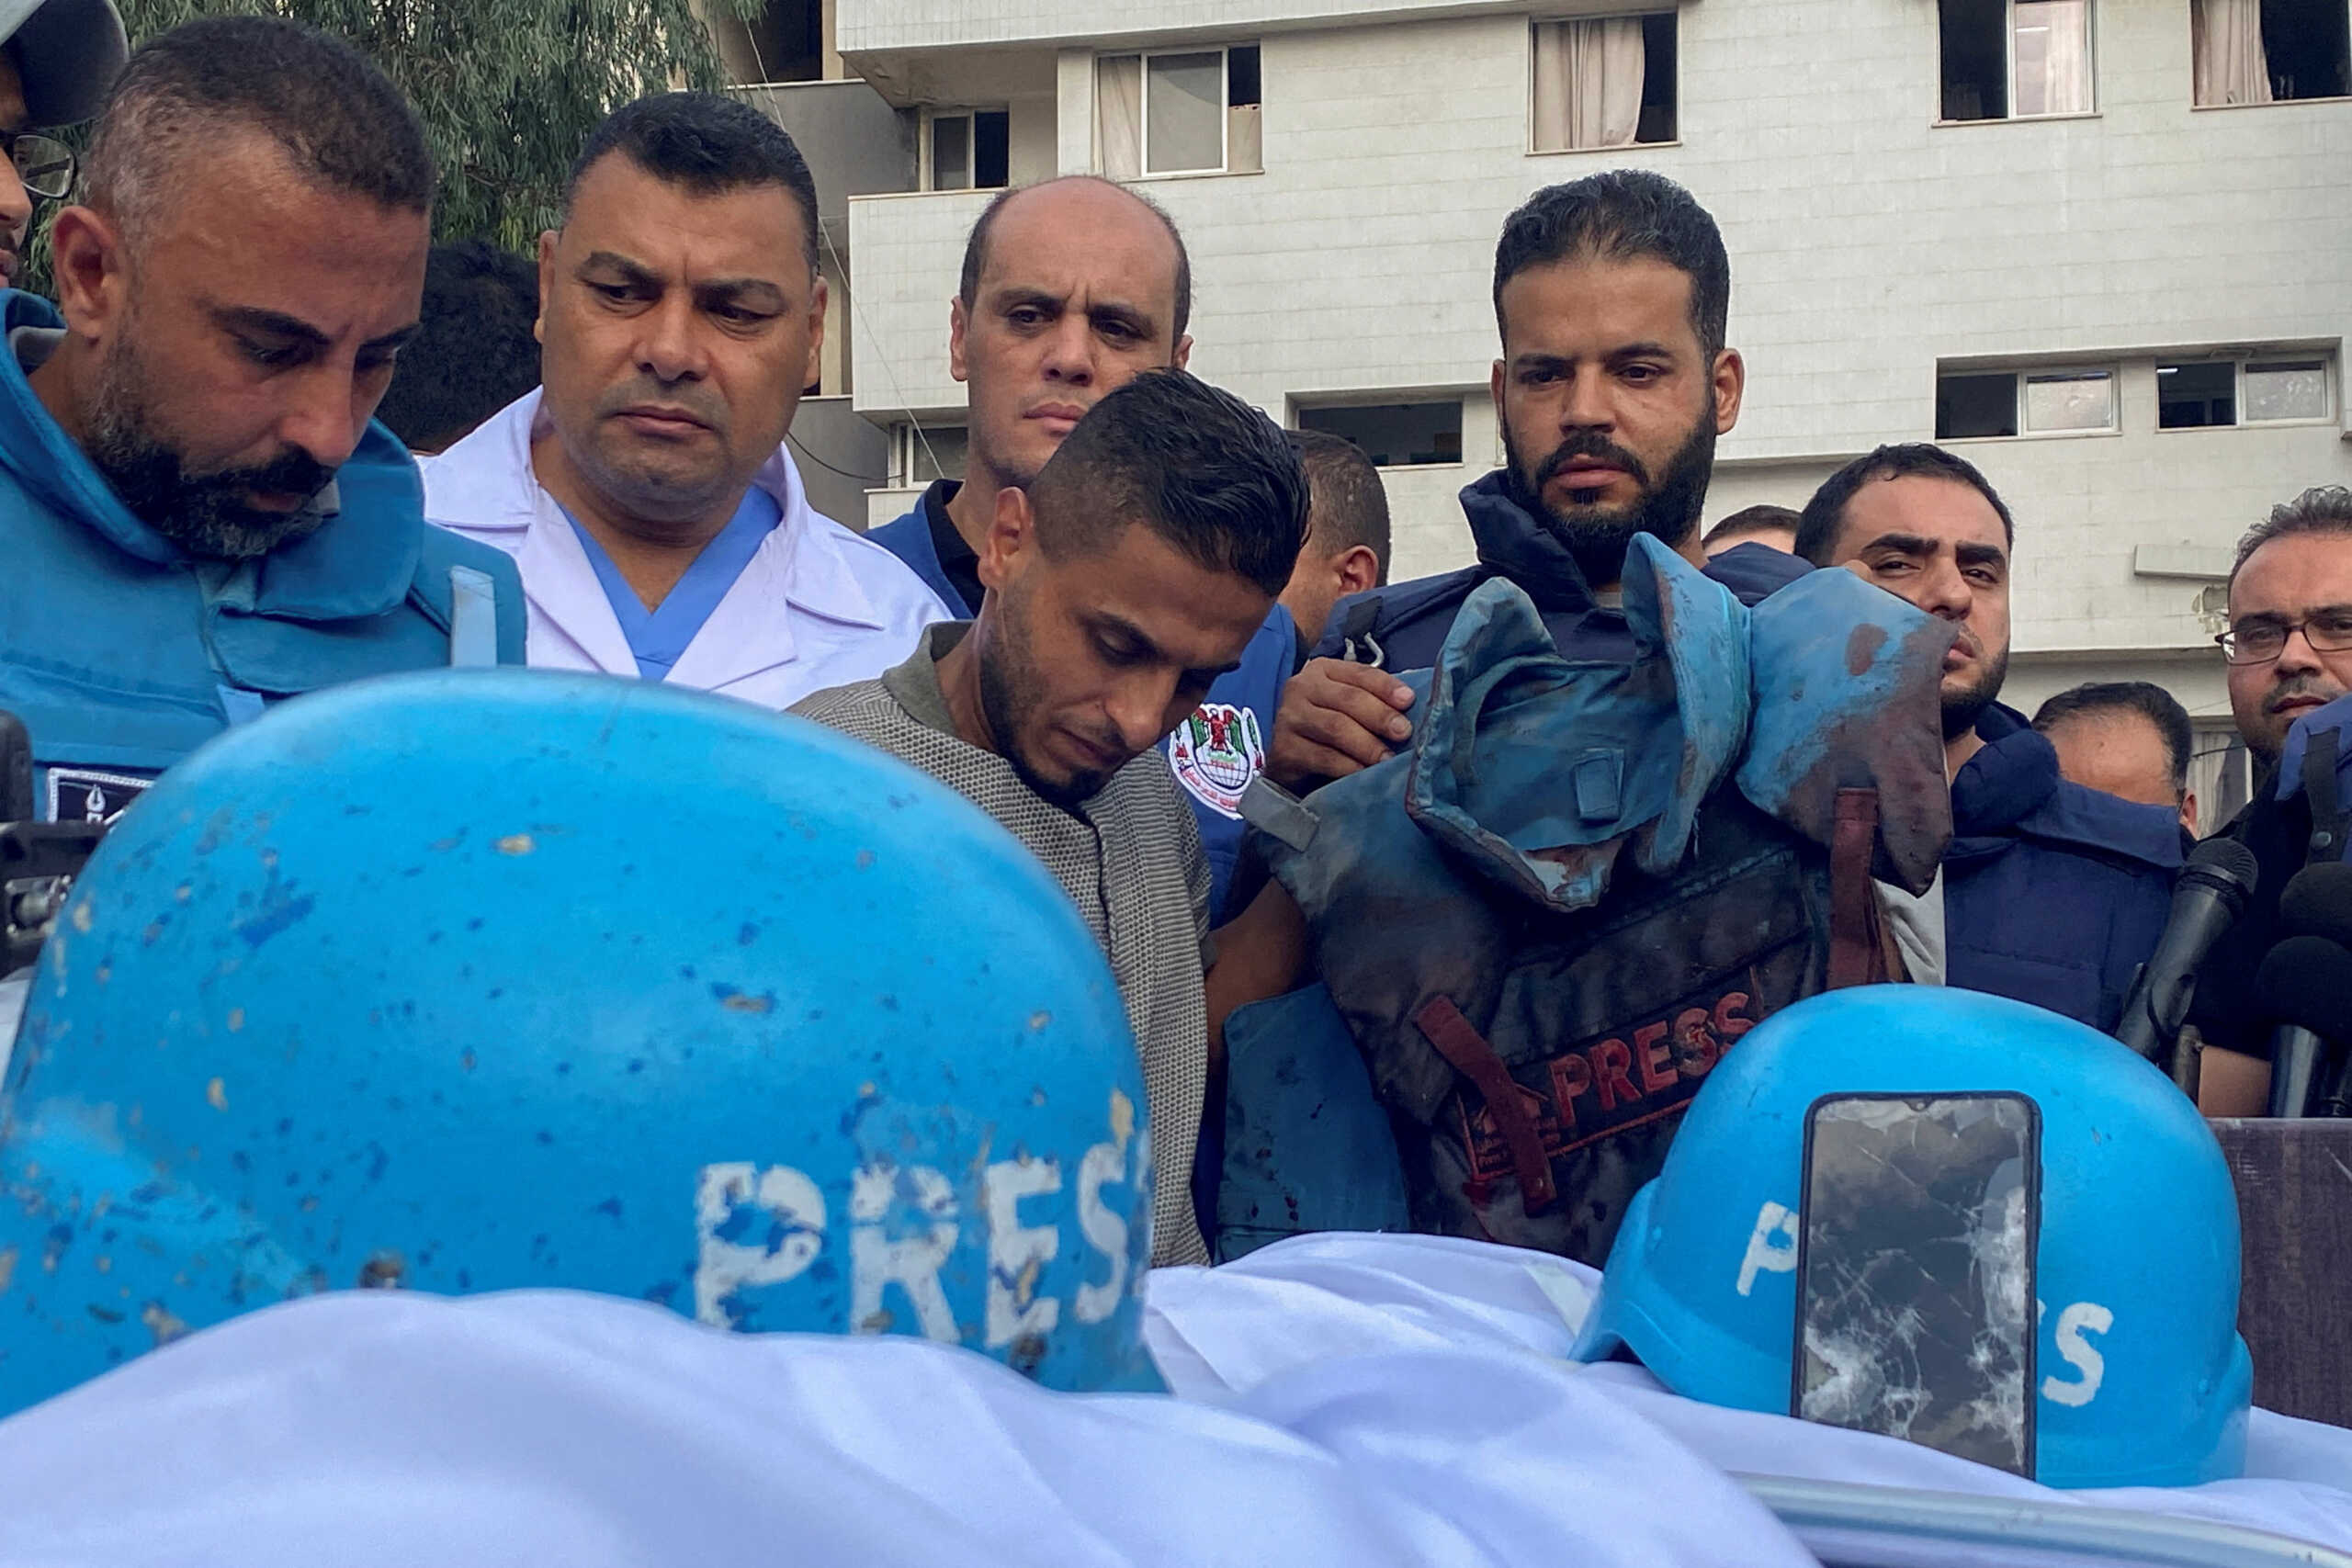 Μέση Ανατολή: 31 δημοσιογράφοι έχουν σκοτωθεί αφότου ξέσπασε ο πόλεμος Ισραήλ – Χαμάς